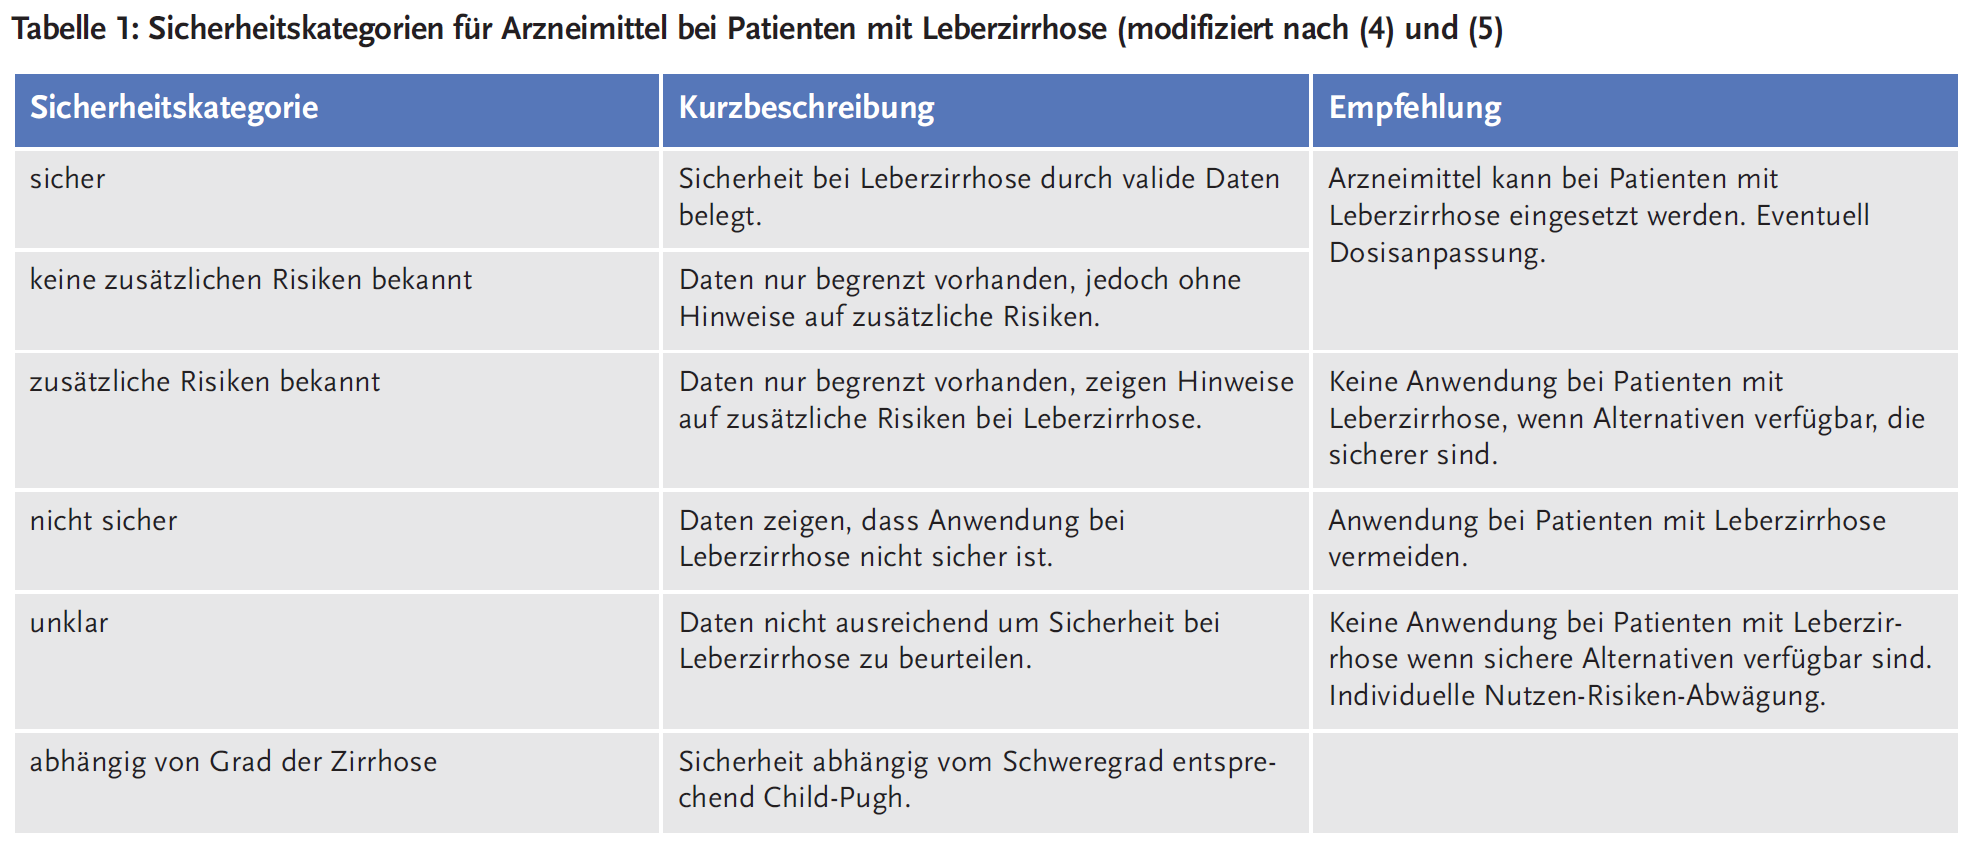 Tabelle 1: Sicherheitskategorien für Arzneimittel bei Patienten mit Leberzirrhose (modifiziert nach (4) und (5))